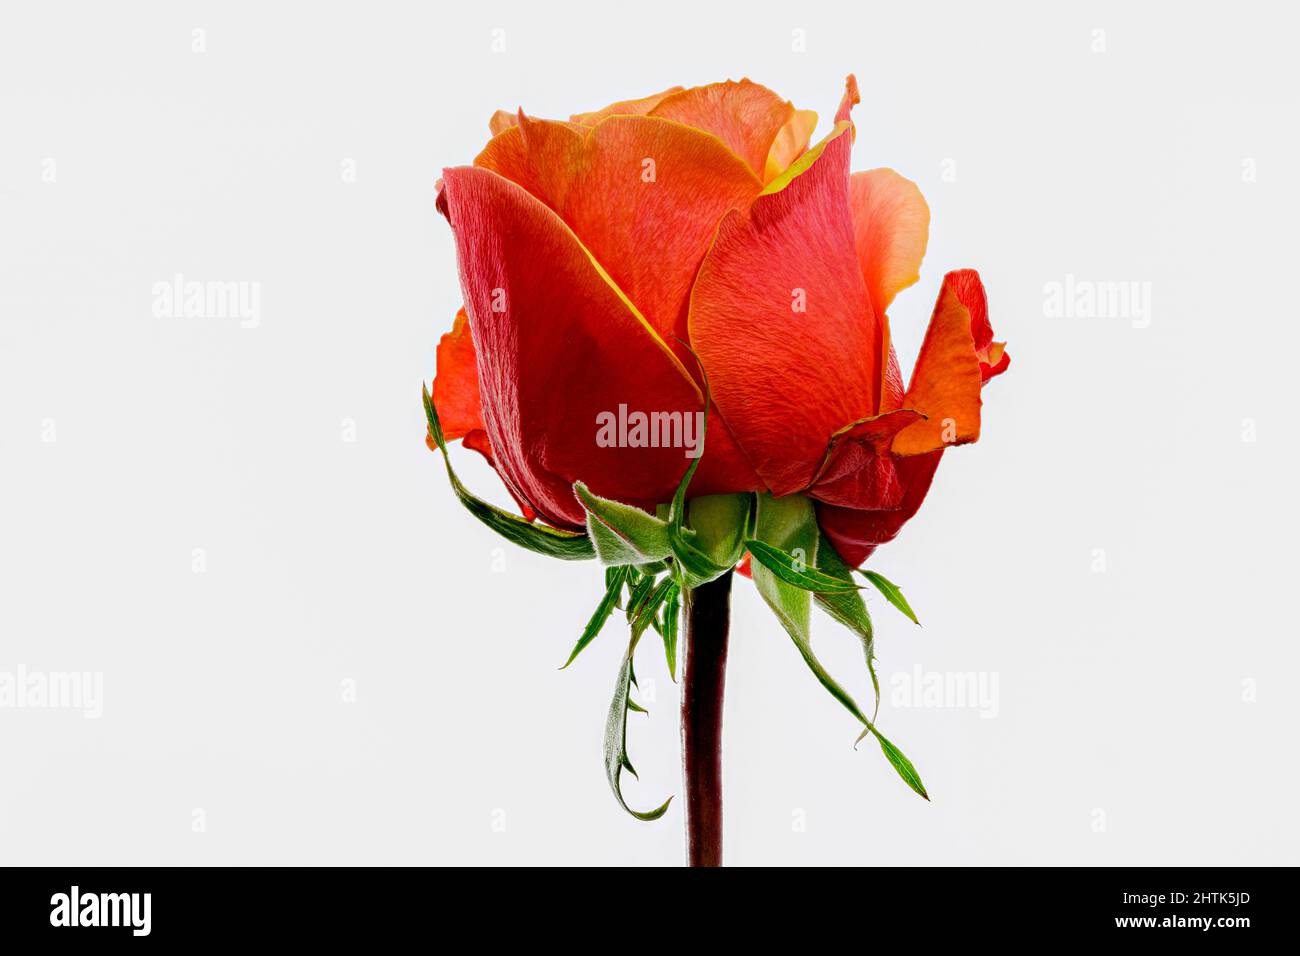 Wunderschöne orange-rote Rosenblüte, die gerade in Blüte platzt Stockfoto